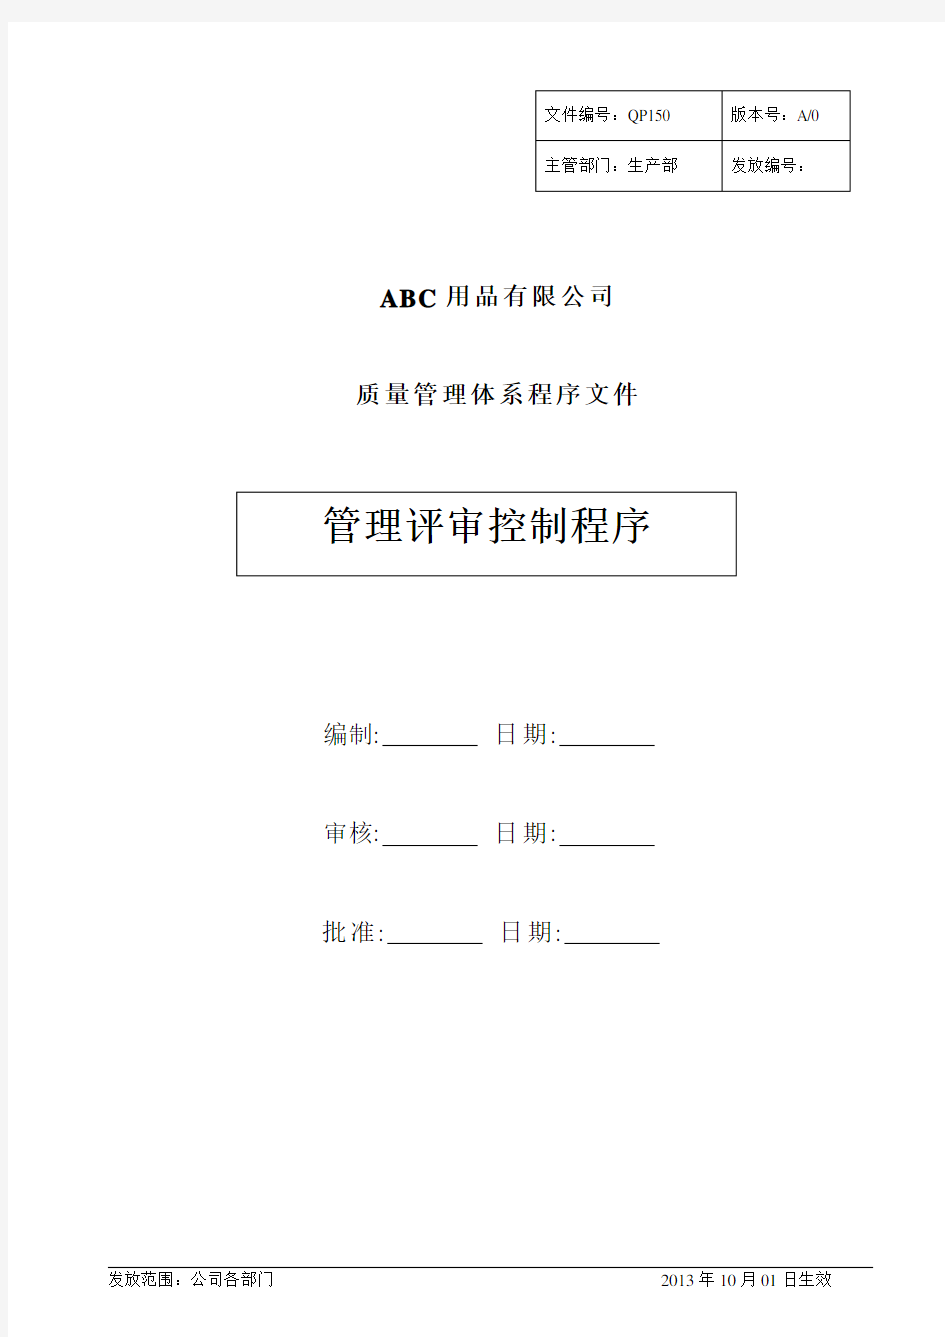 中英文对照版-管理评审控制程序